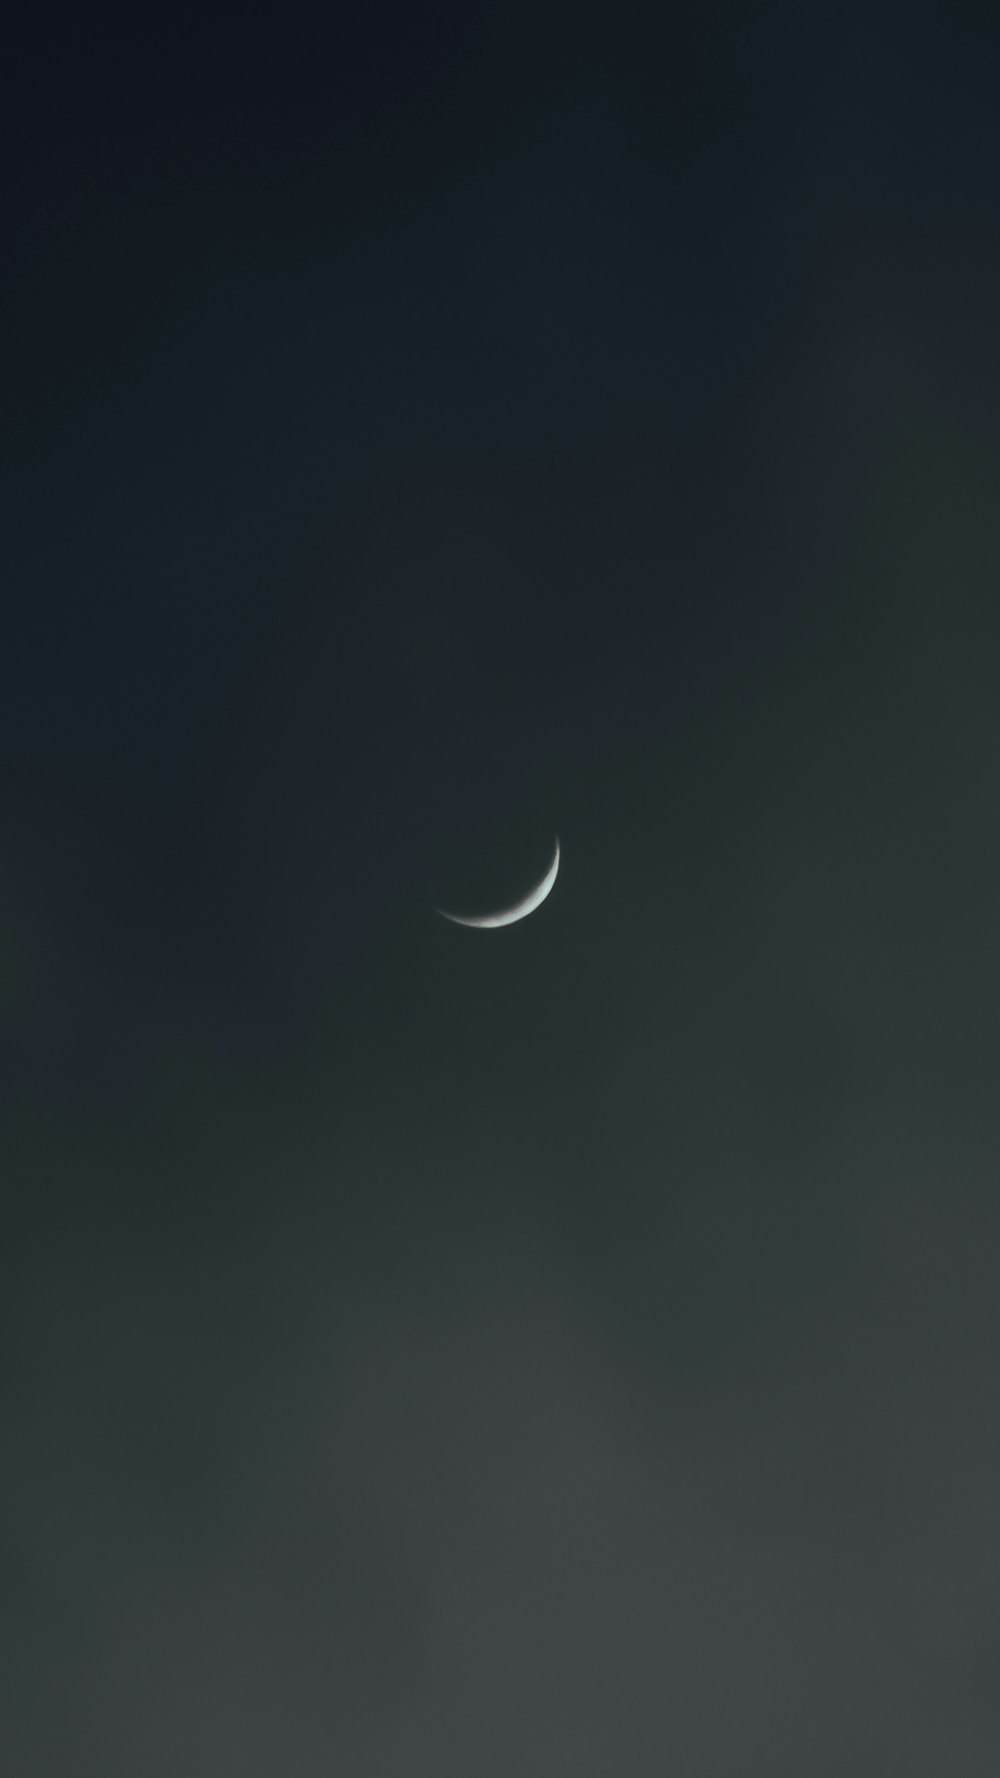 La lune est vue à travers les nuages sombres